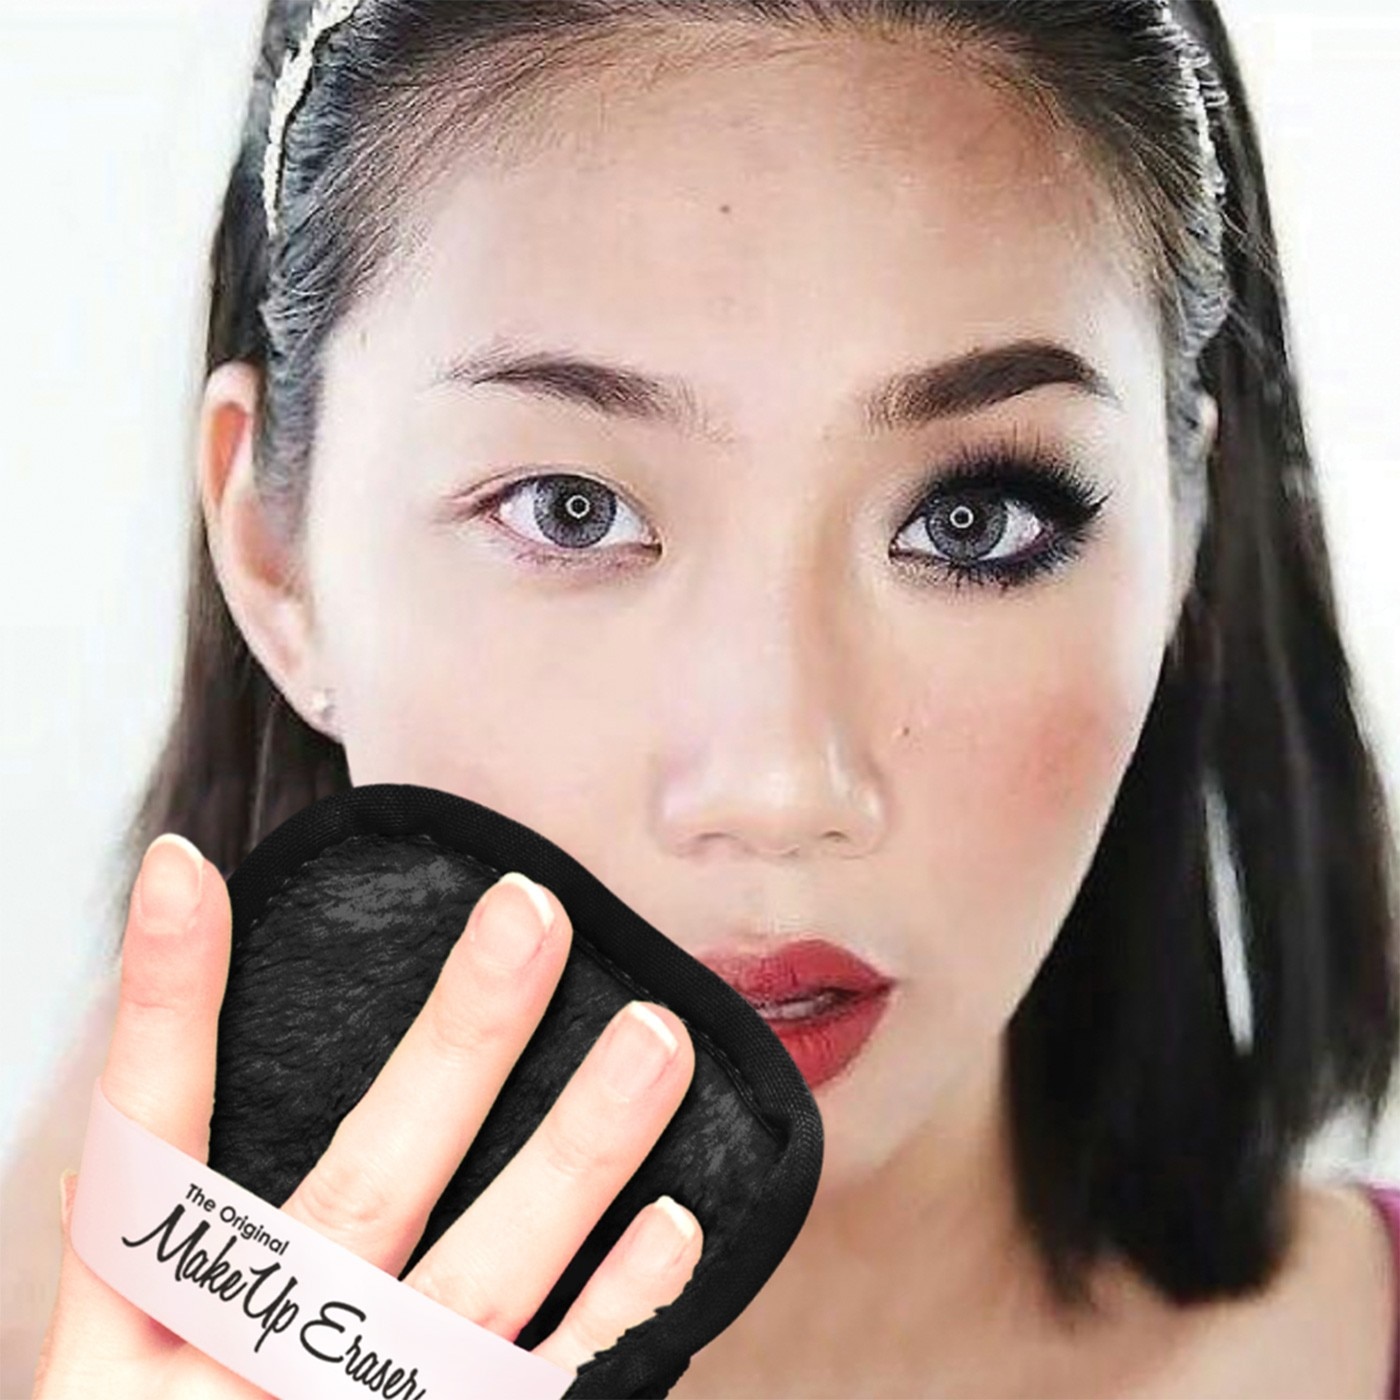 The Original MakeUp Eraser 卸妝巾組，專利技術超柔抗菌纖維，雙面使用，短毛面清除彩妝、長毛面清潔去角質，使用溫水即可卸除彩妝。